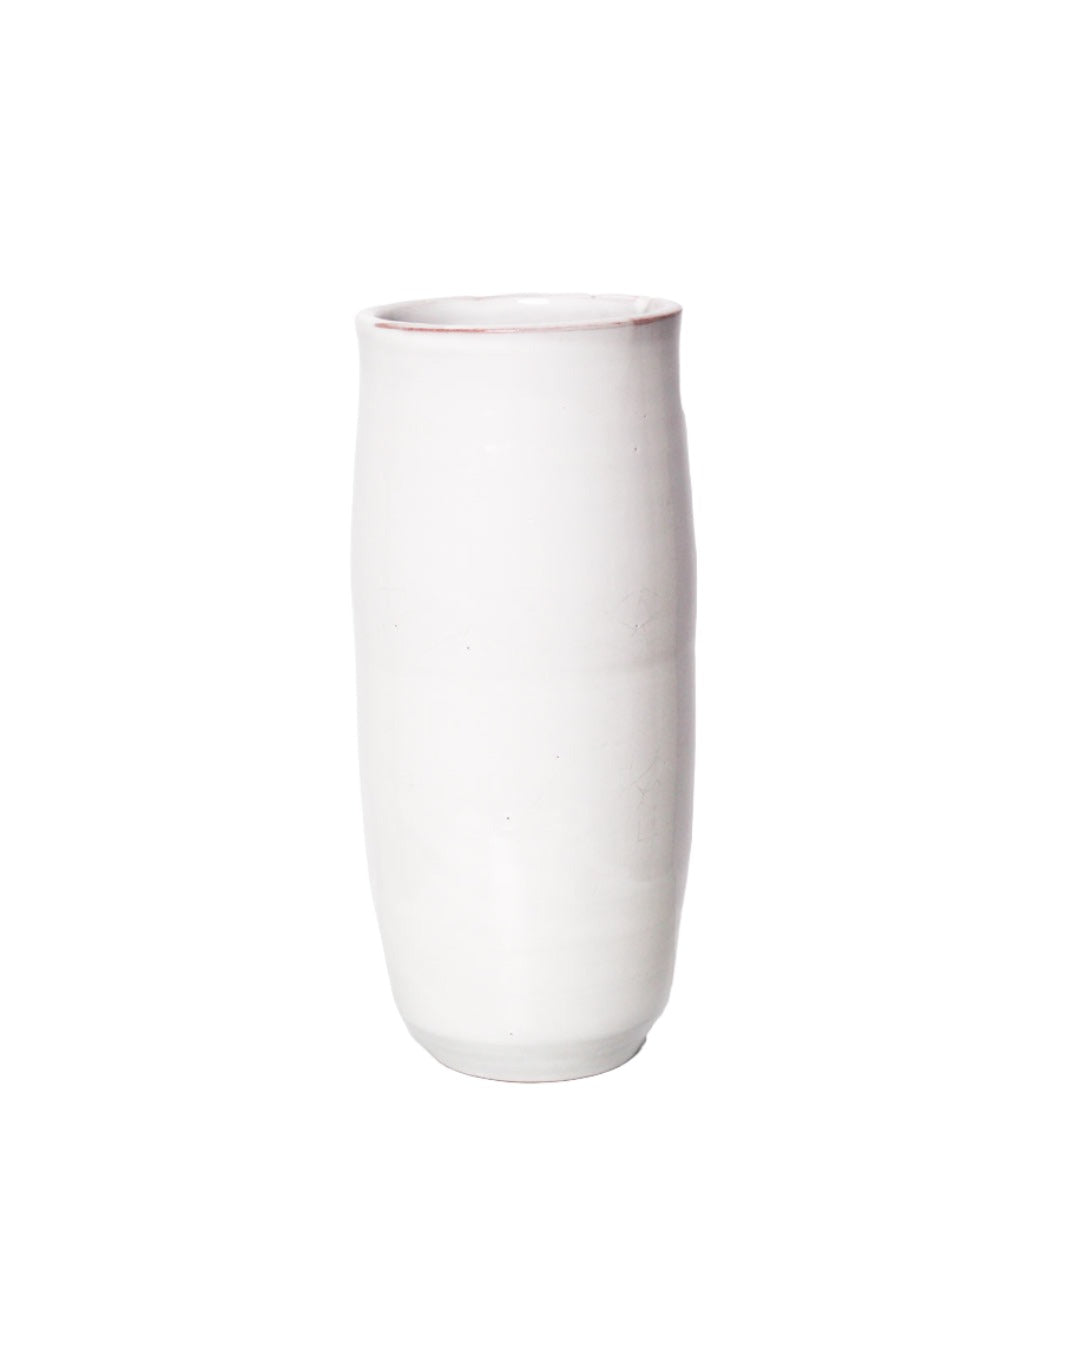 Handmade vase - Basis